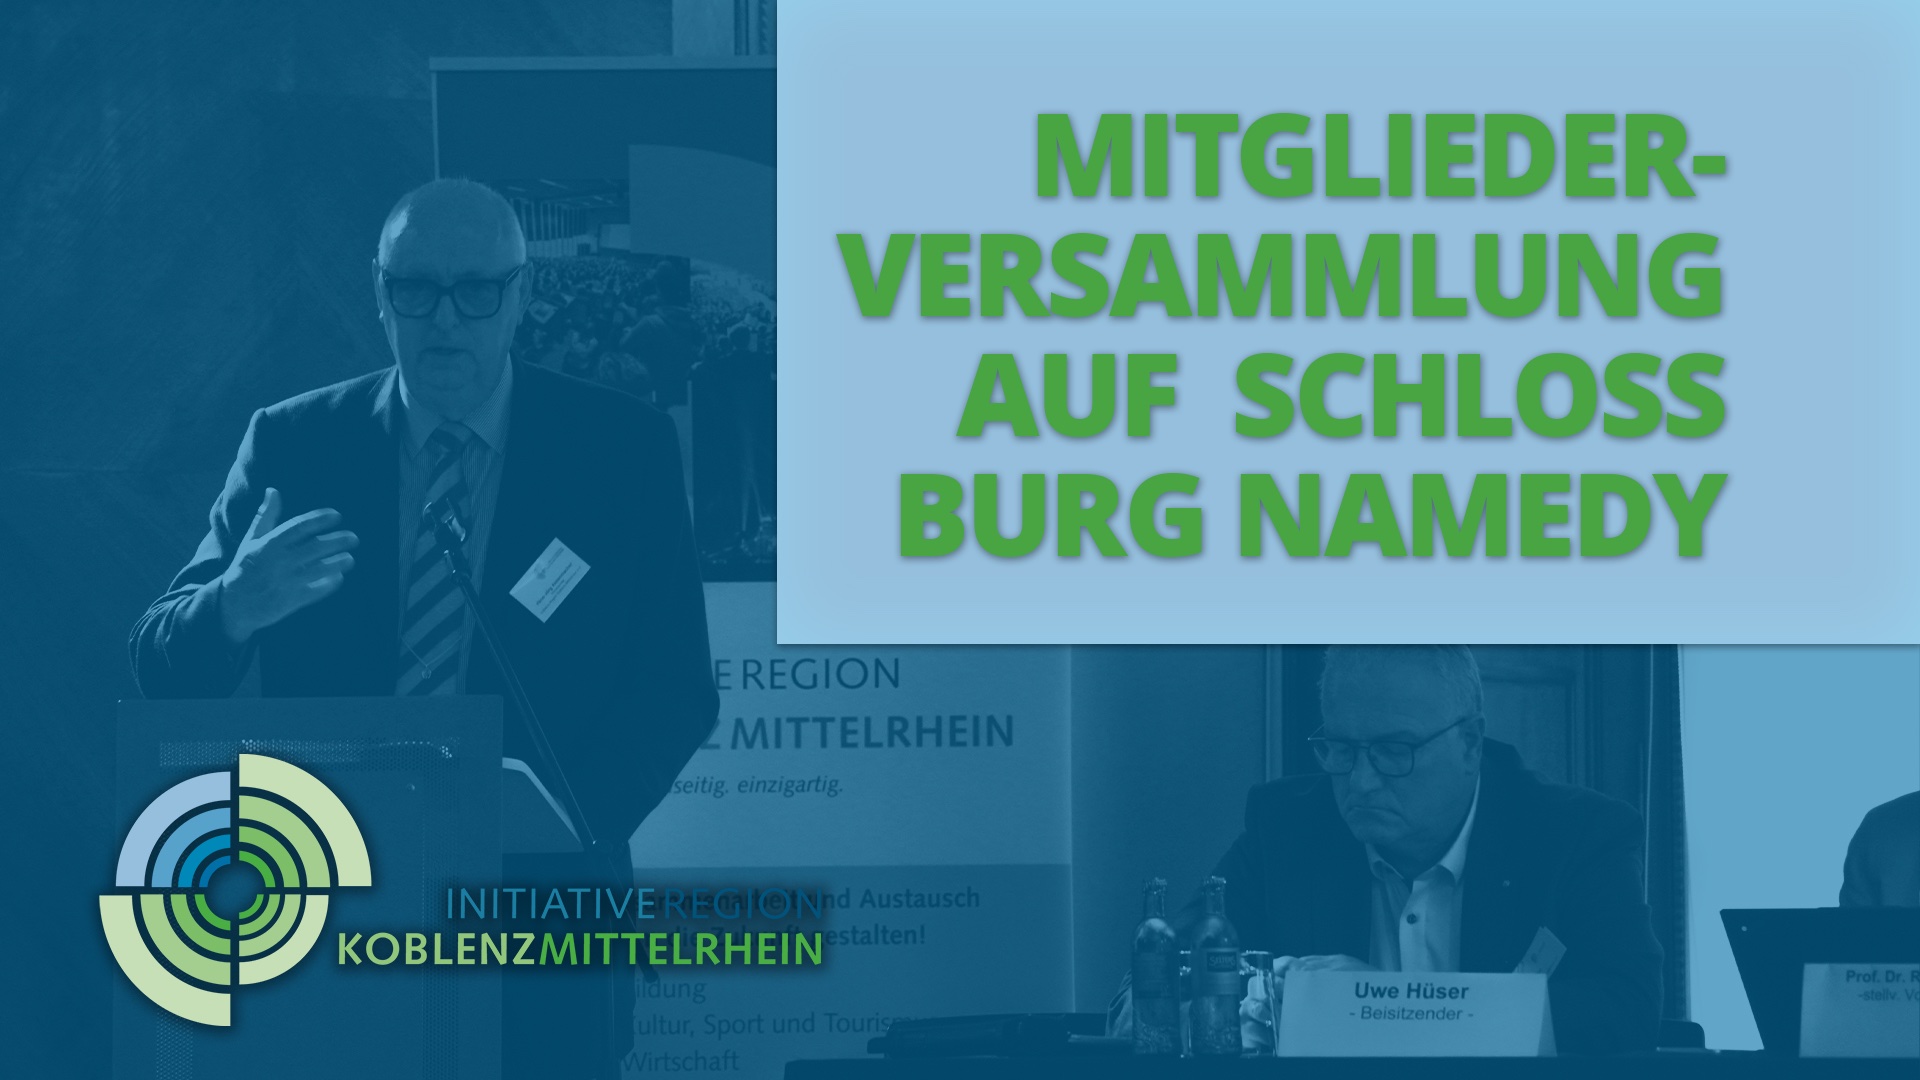 Initiative Region Koblenz-Mittelrhein, der Talk (Teil 2)